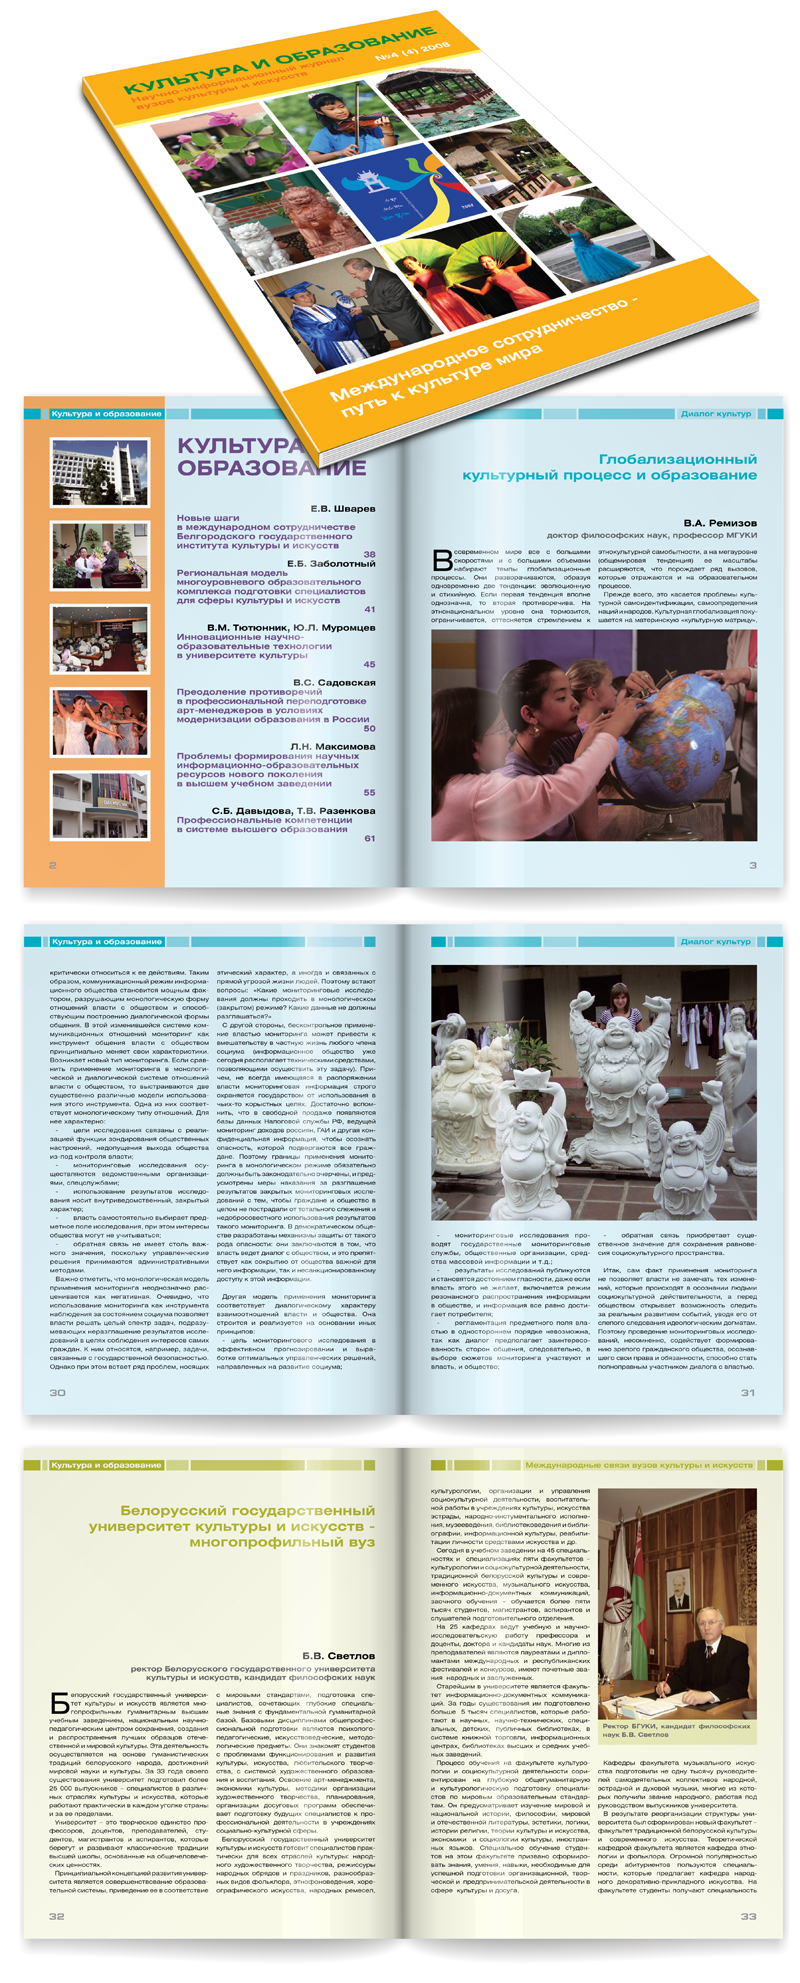 Журнал "Культура и образование №4" 2008г.